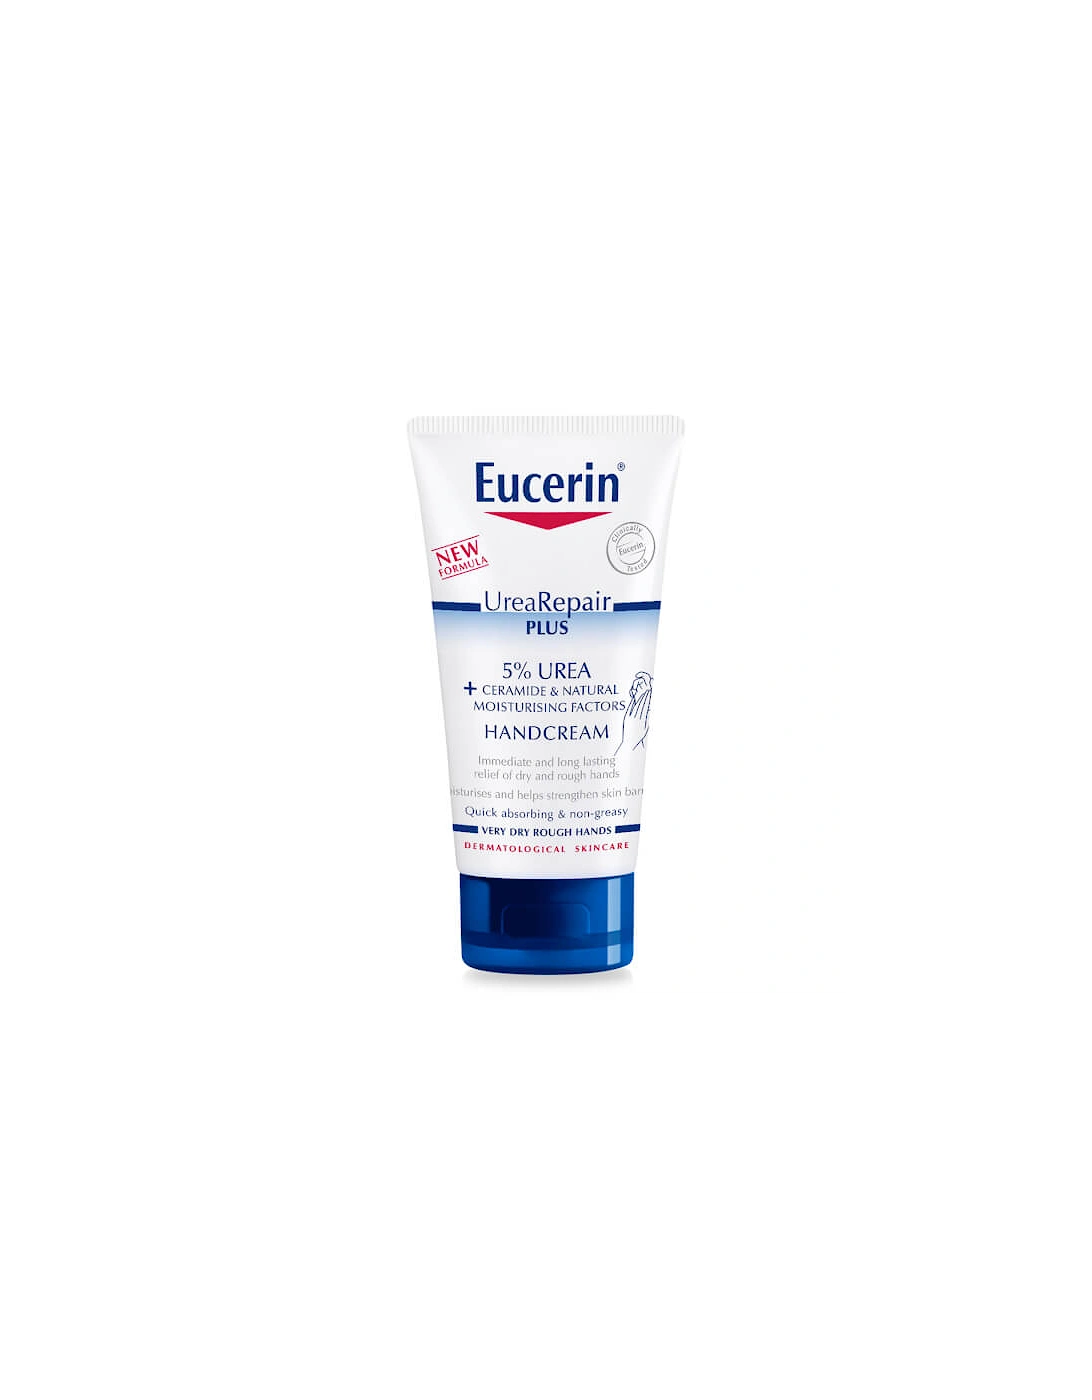 UreaRepair Plus 5% Urea Hand Cream 75ml - Eucerin, 2 of 1